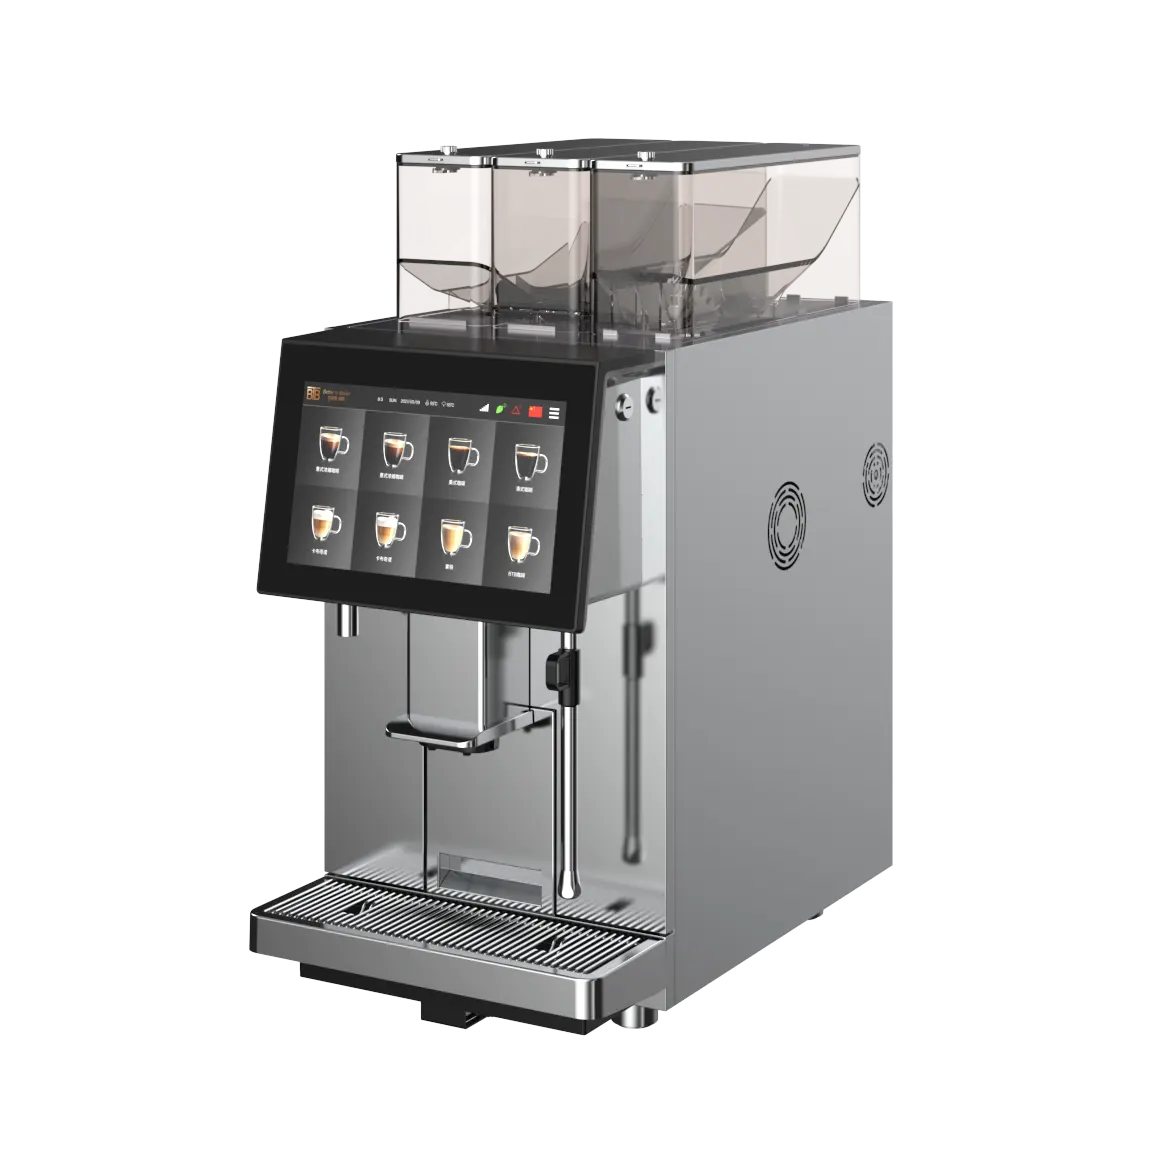 ماكينة قهوة رئيسية احترافية مع نظام أندرويد ، ماكينة إسبريسو أوتوماتيكية بالكامل بشاشة ملونة تعمل باللمس